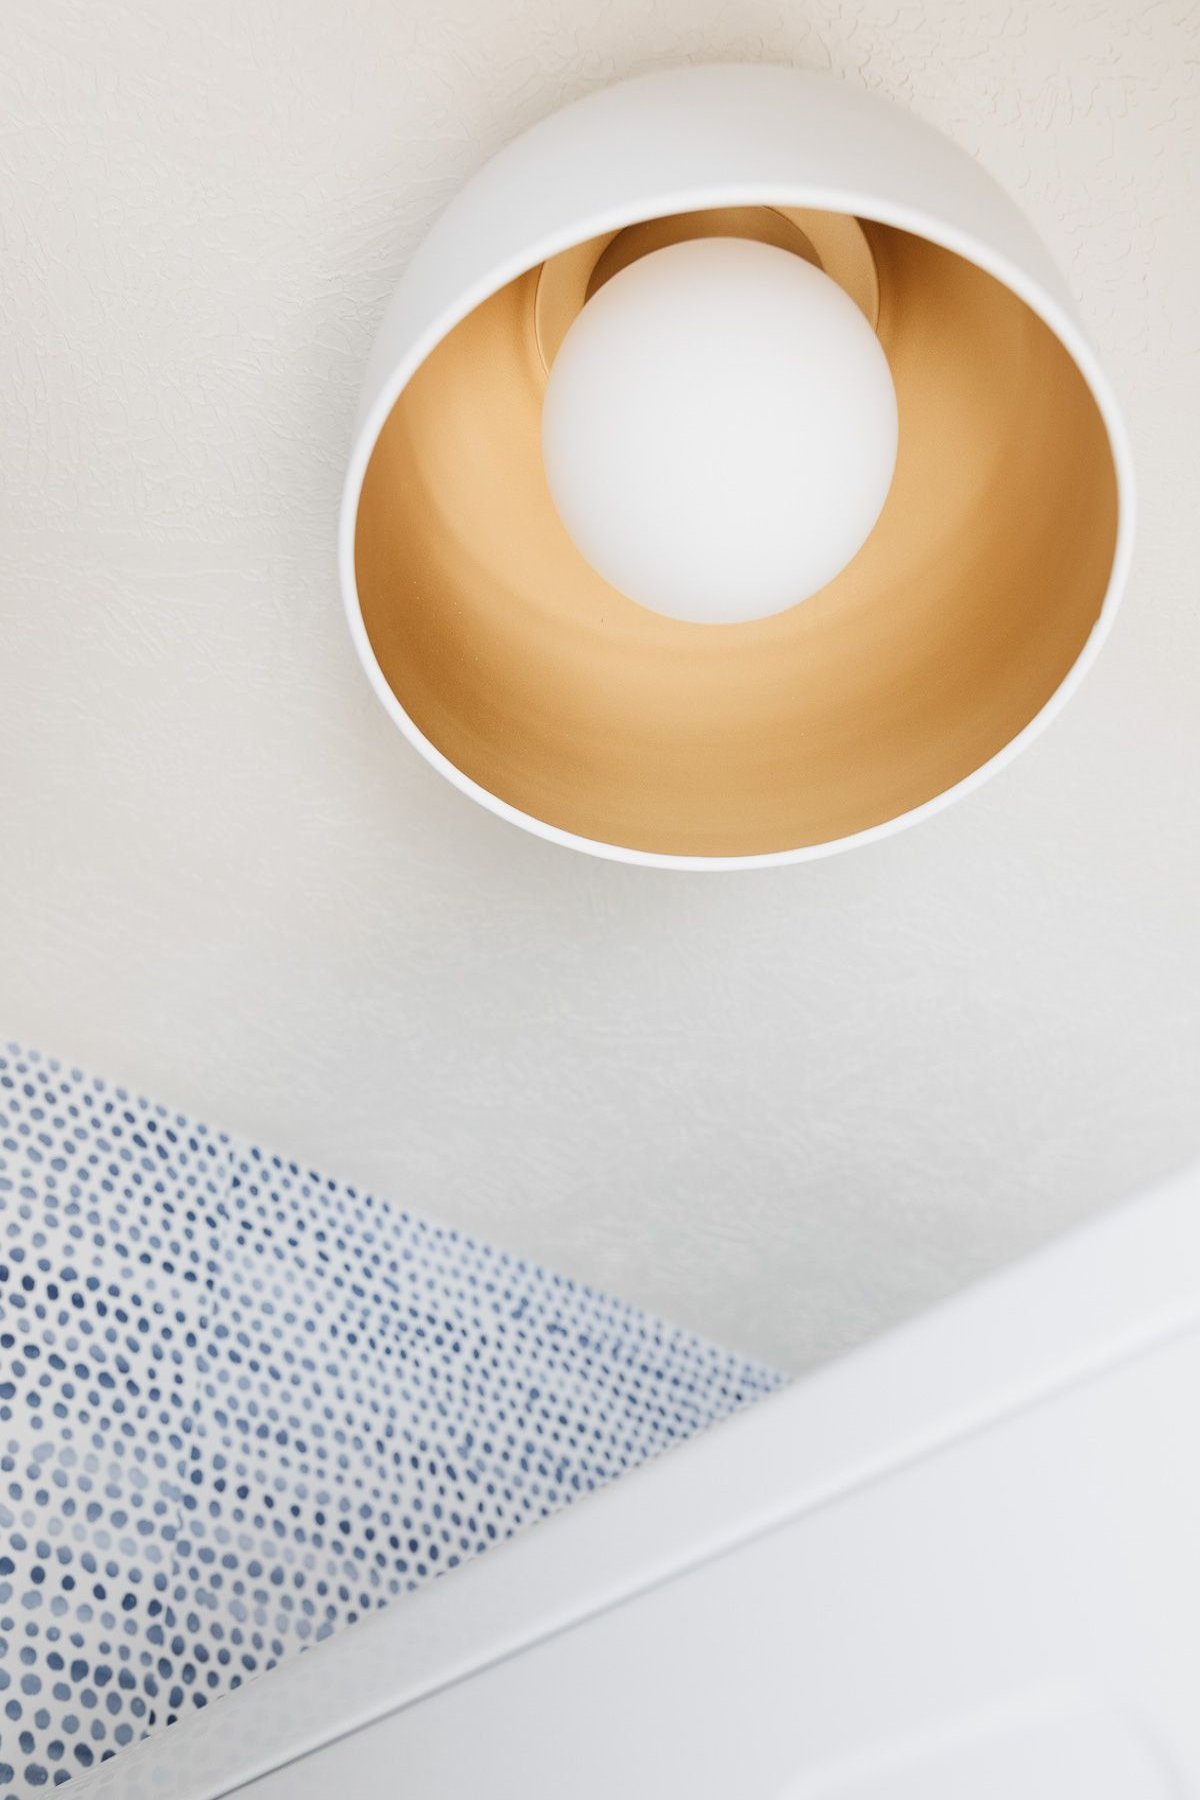 A modern gold flush mount light fixture near a blue and white polka dot wallpaper.